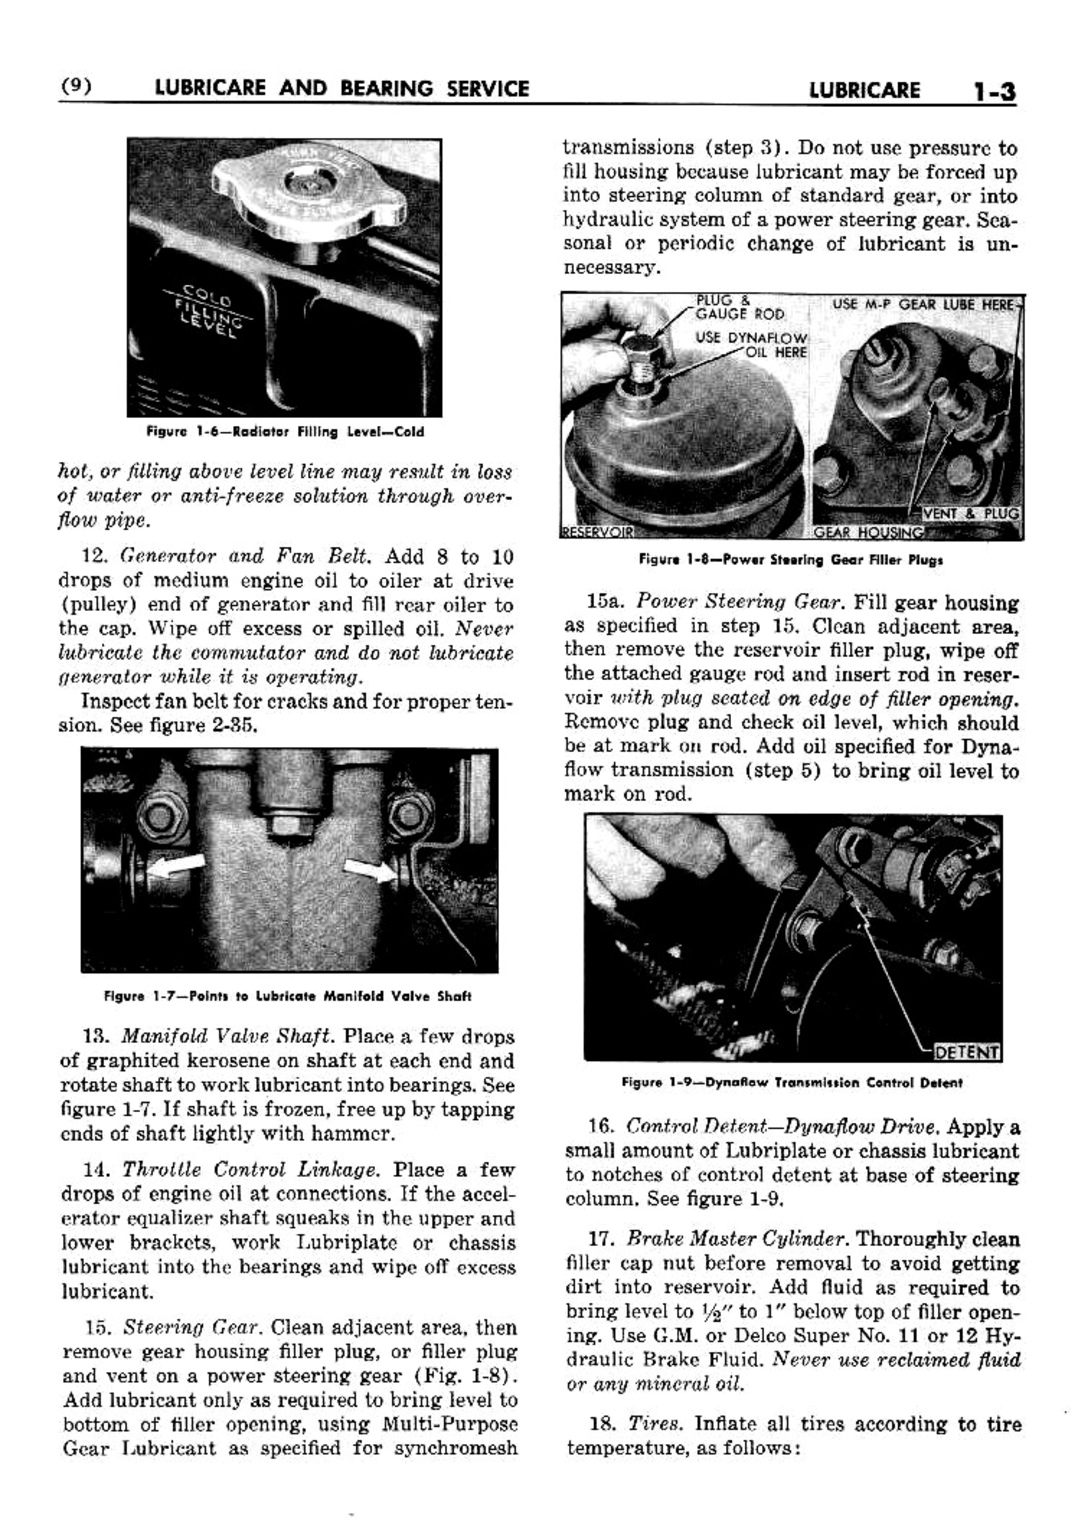 n_02 1952 Buick Shop Manual - Lubricare-003-003.jpg